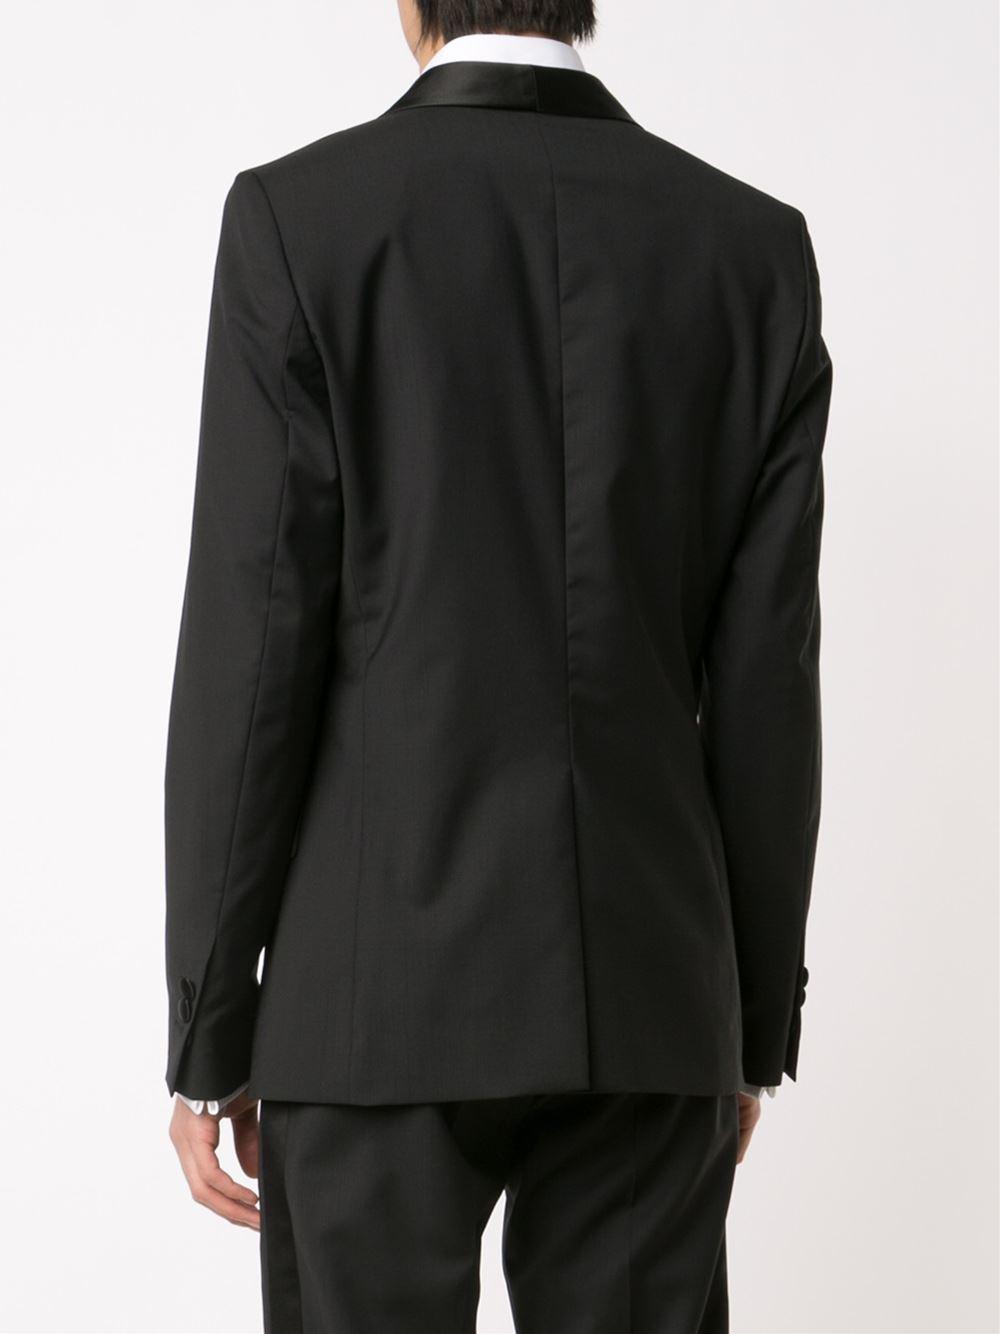 Vivienne Westwood Silk Tuxedo Blazer in Black for Men - Lyst